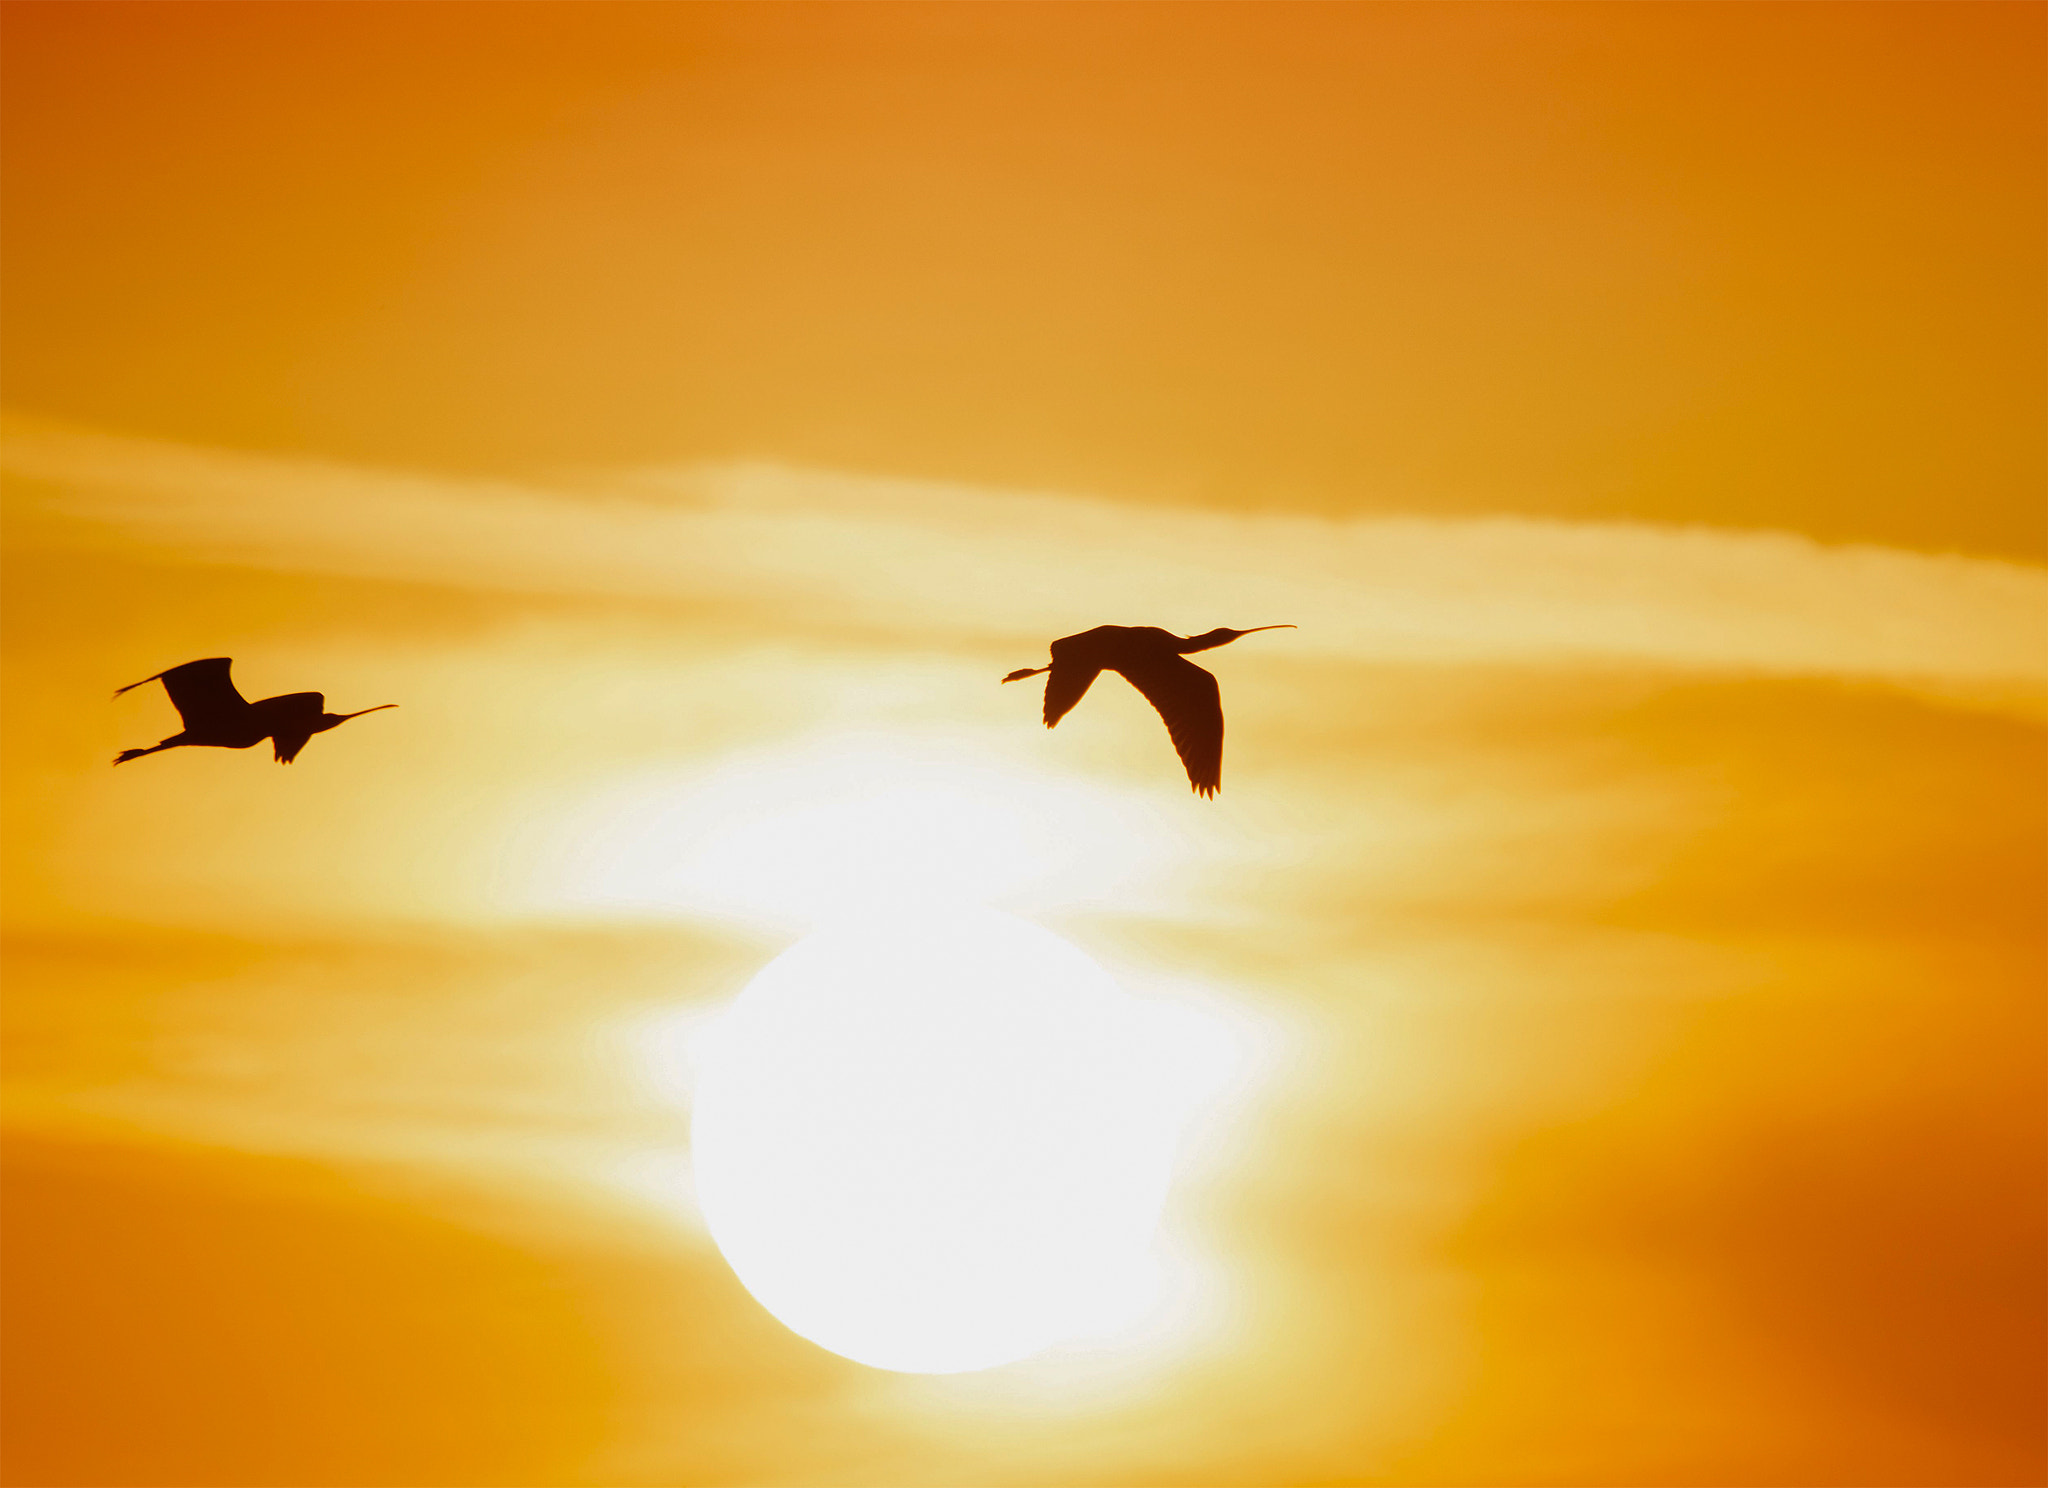 Nikon D5200 sample photo. Sunset birds photography